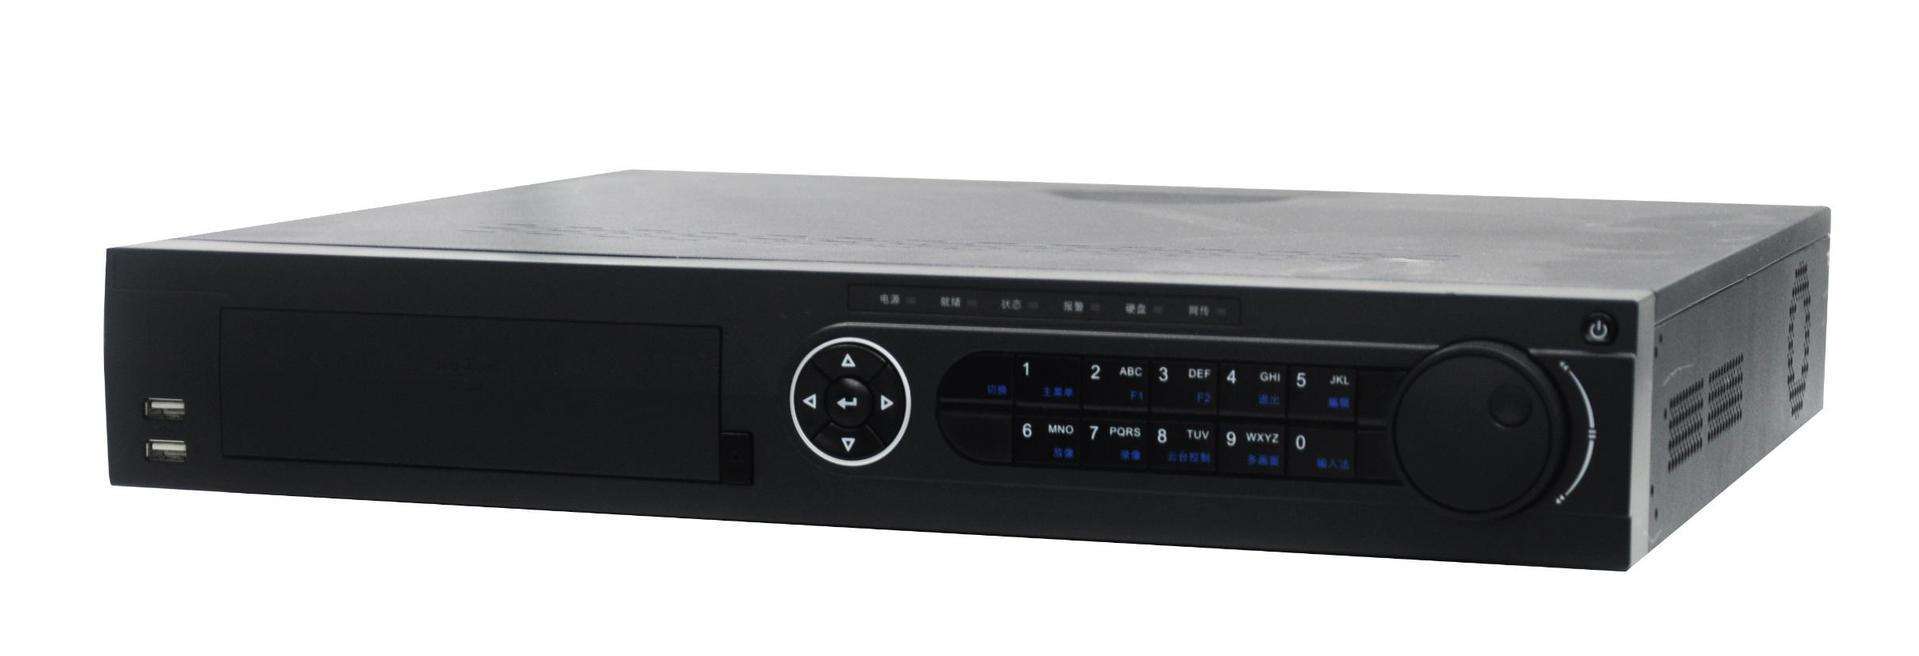 新余海康威视DS-7932N-E4硬盘录像机监控安装